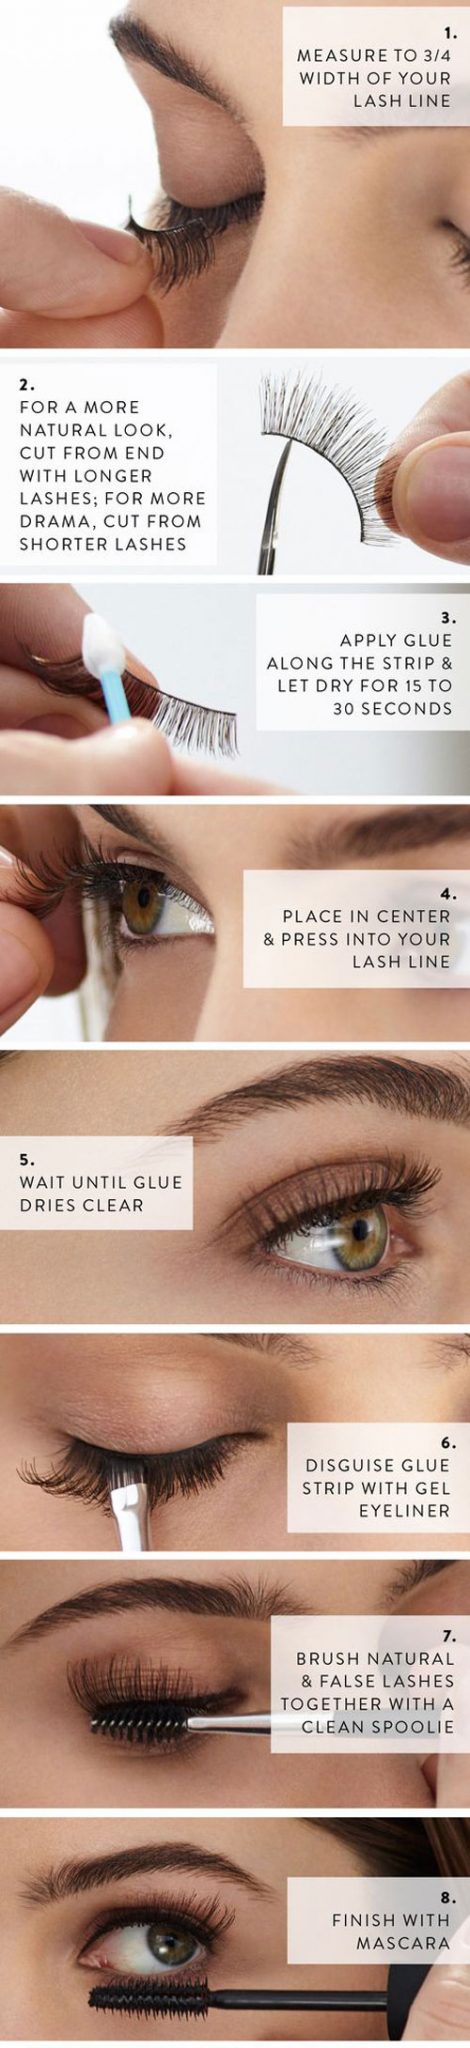 fake eyelash tips